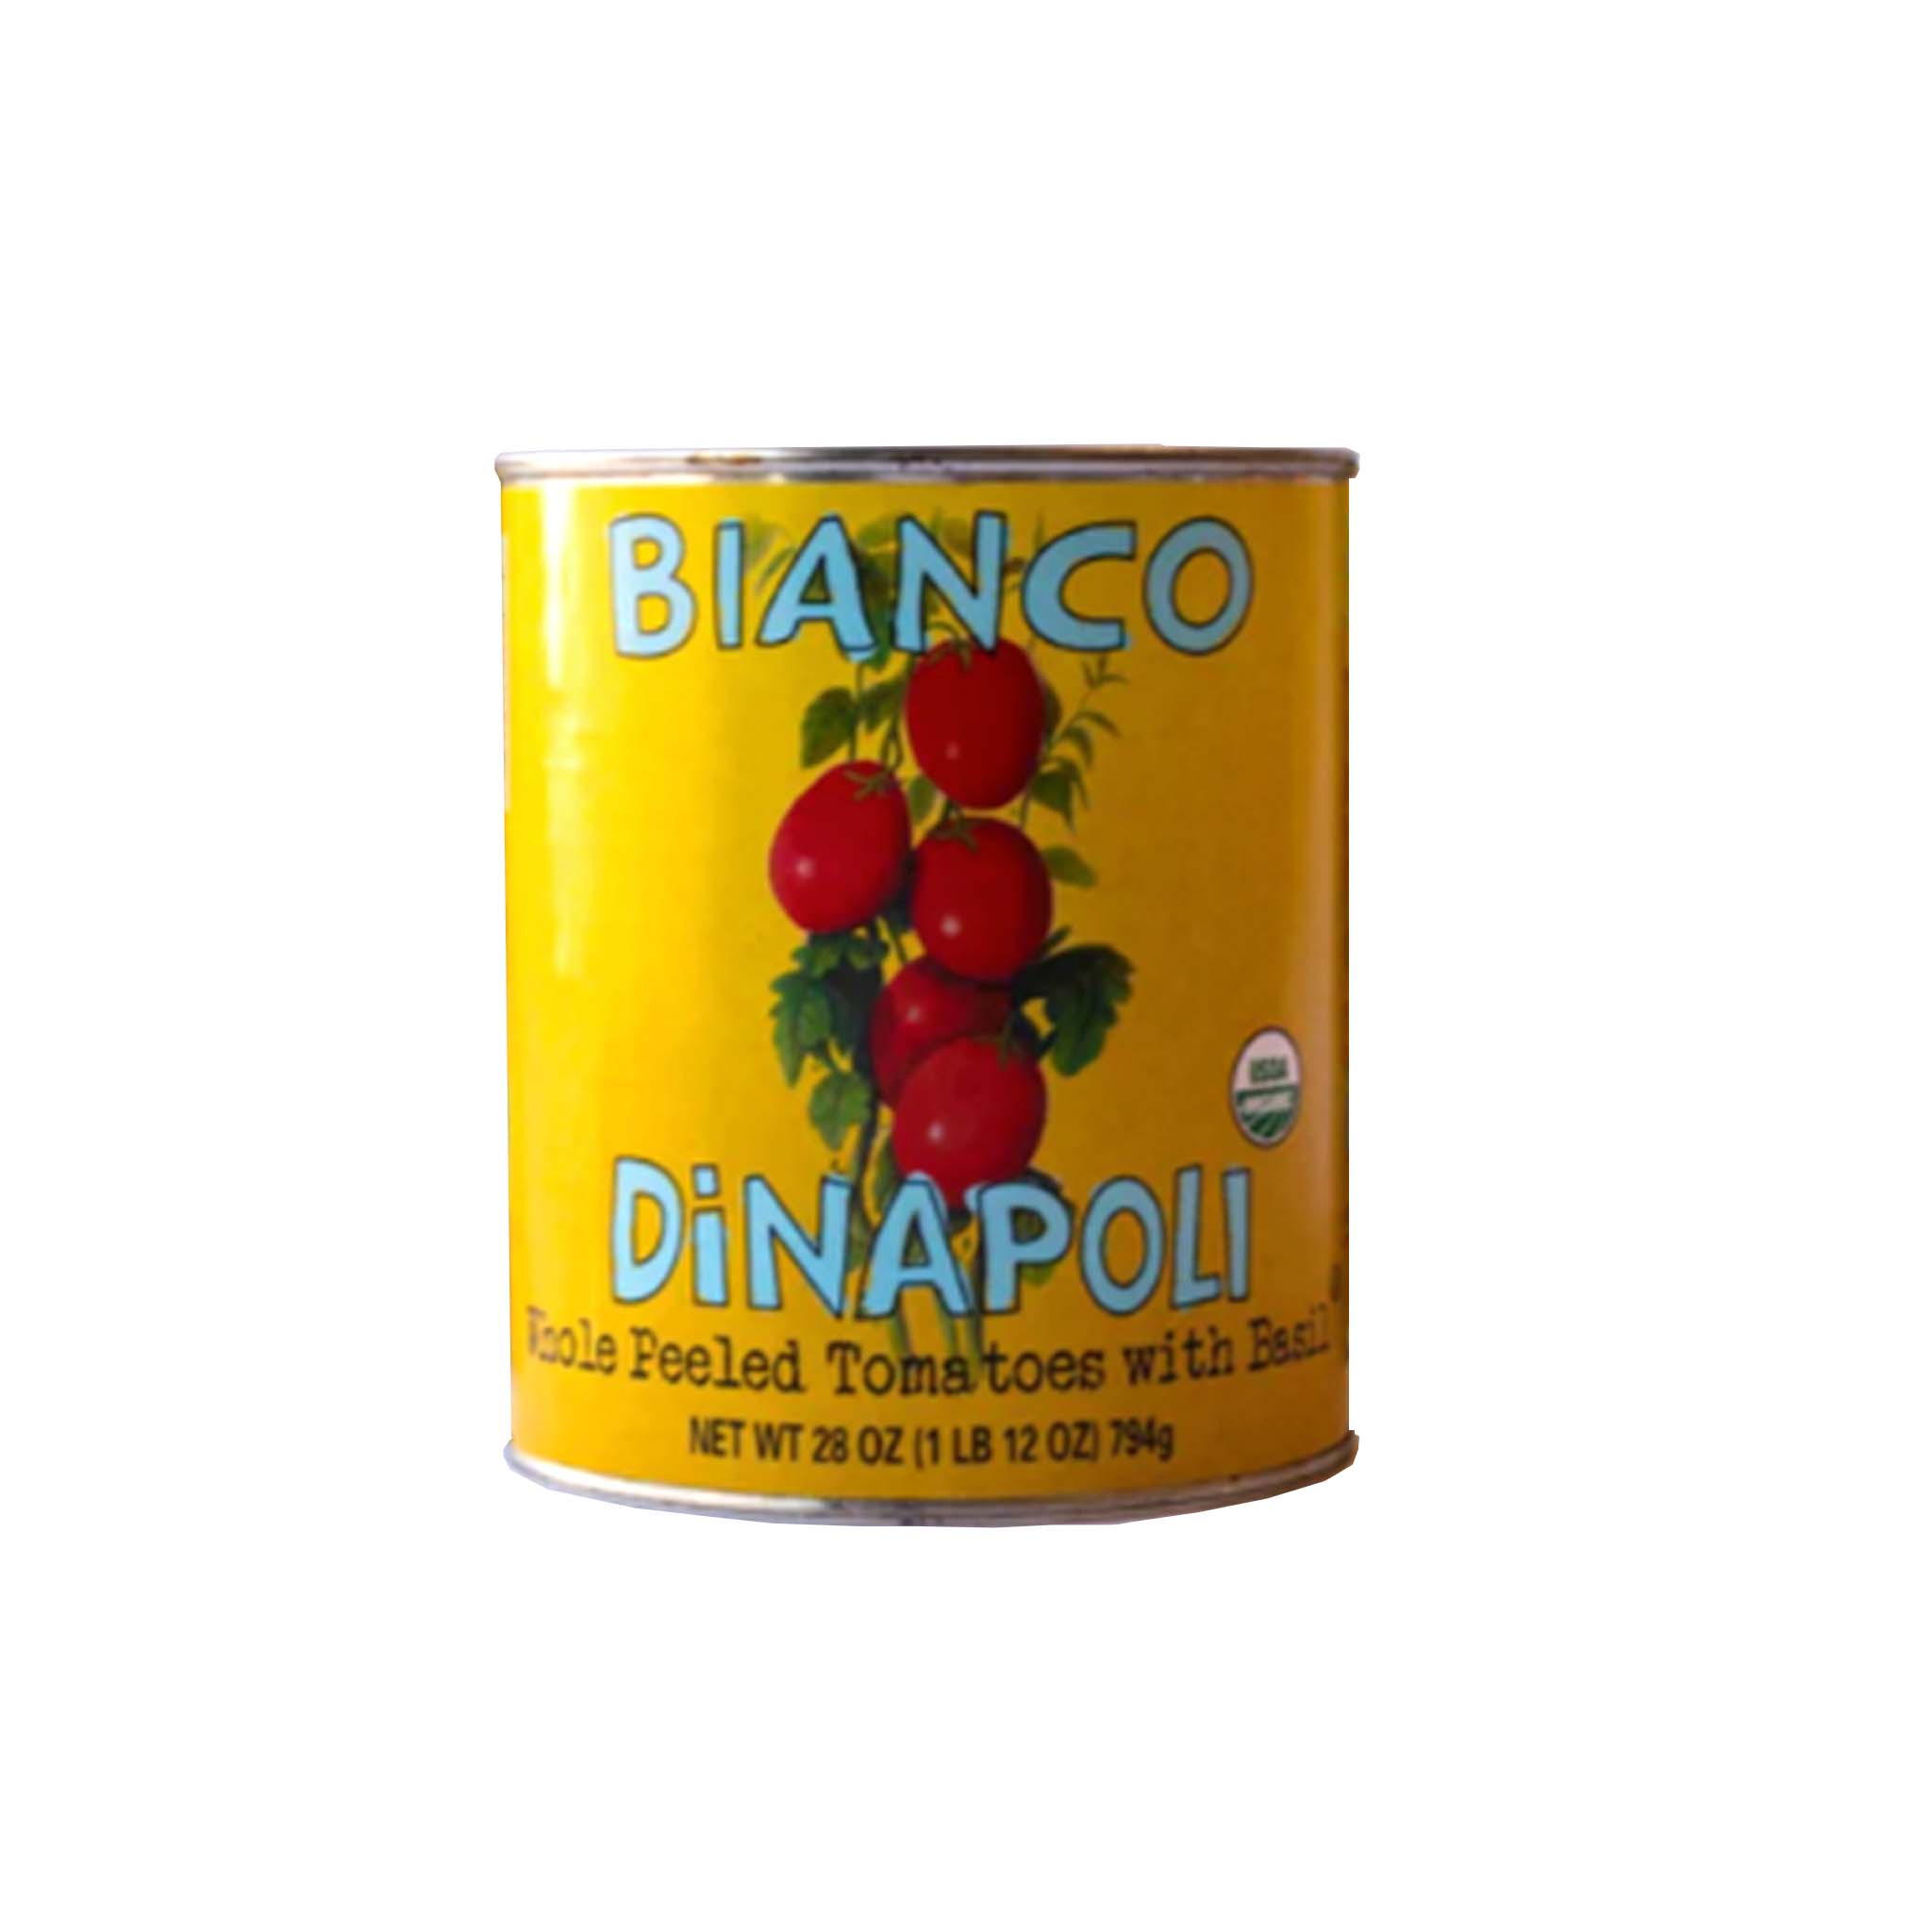 BIANCO DINAPOLI WHOLE PEELED TOMATOES WITH BASIL 28oz